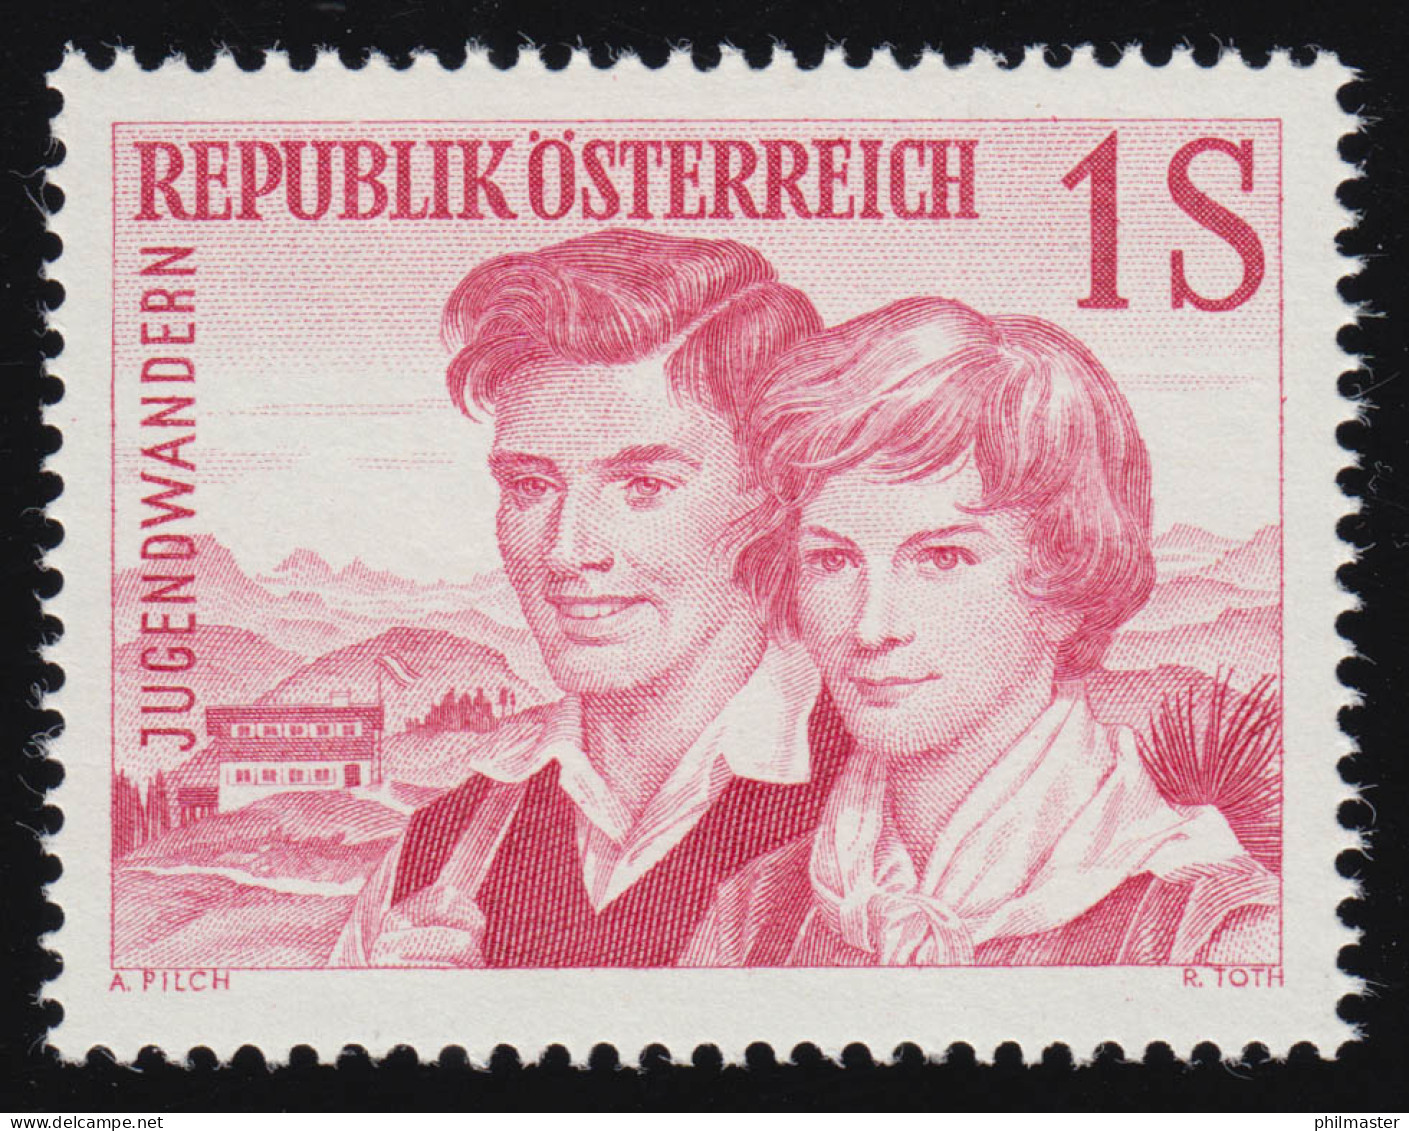 1076 Jugendwandern, Jugendl. Paar Vor Jugendherberge, 1 S, Postfrisch ** - Unused Stamps